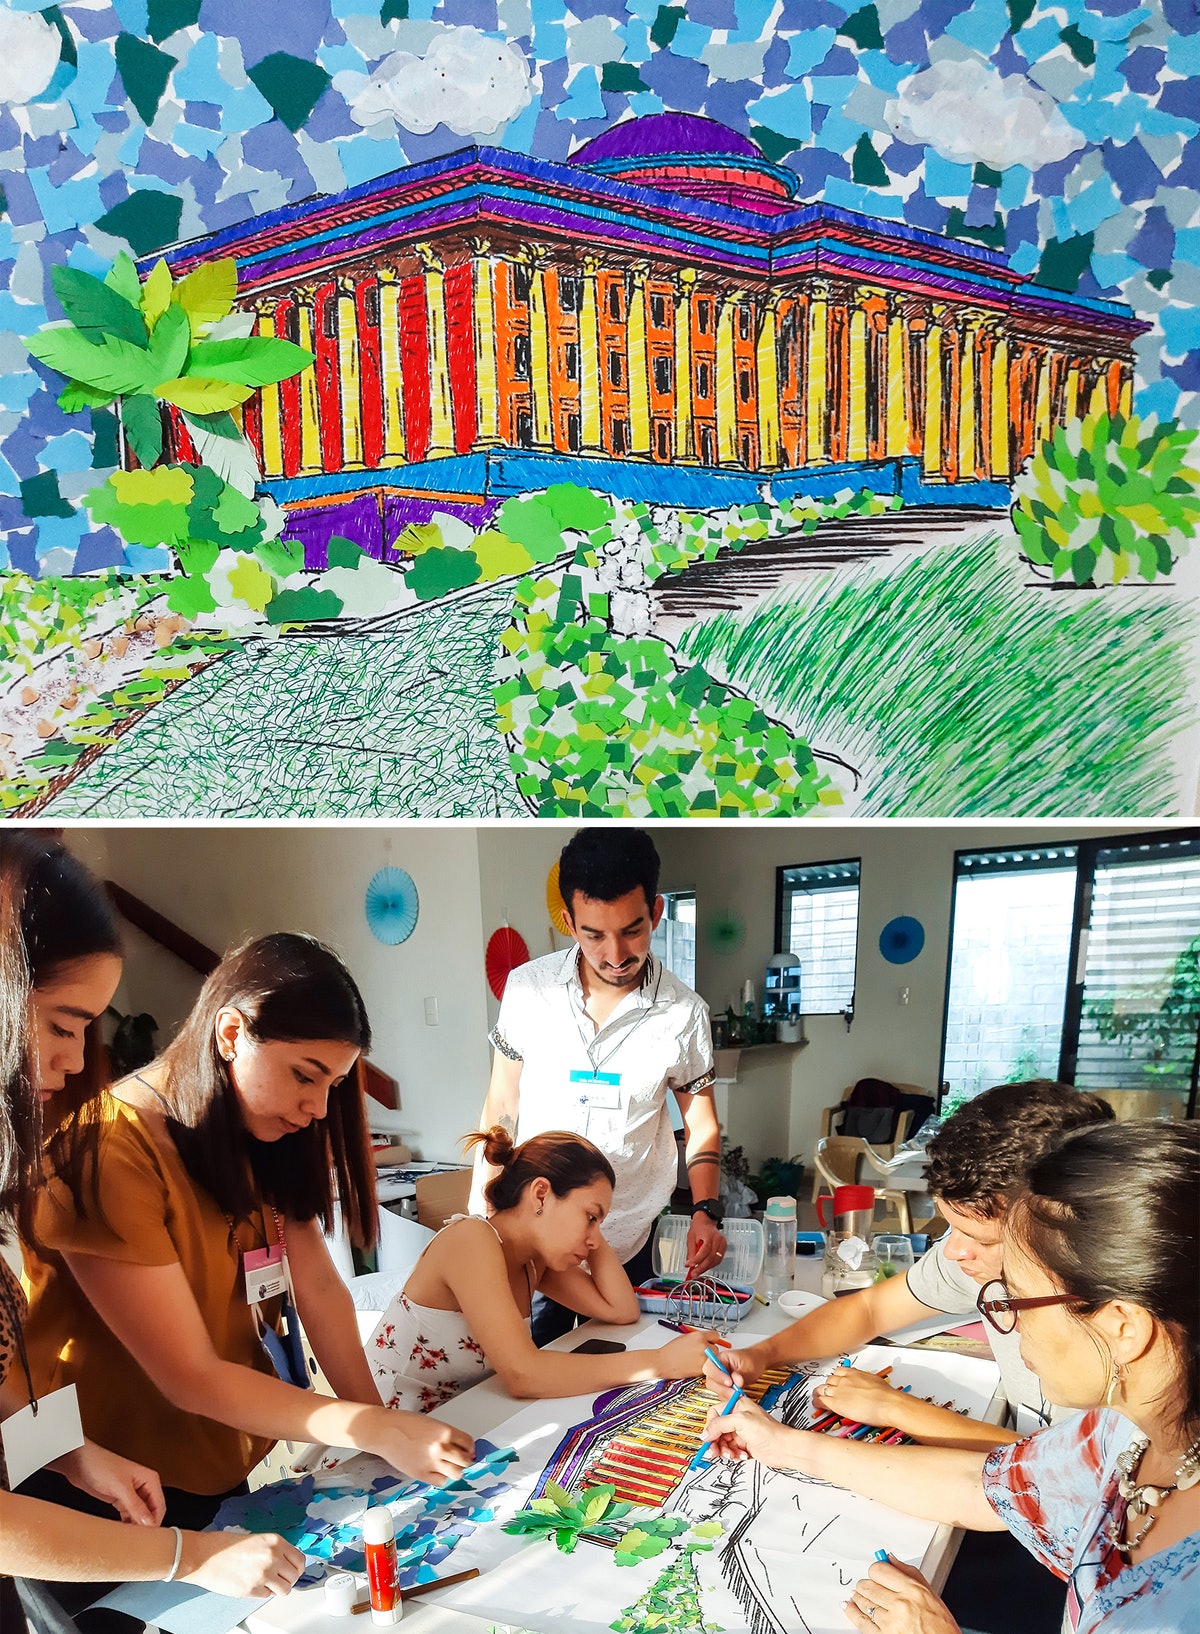 Les participants à un rassemblement à Colon, au Salvador, ont créé une œuvre collaborative en mosaïque de papier représentant le siège de la Maison universelle de justice au Centre mondial bahá’í.